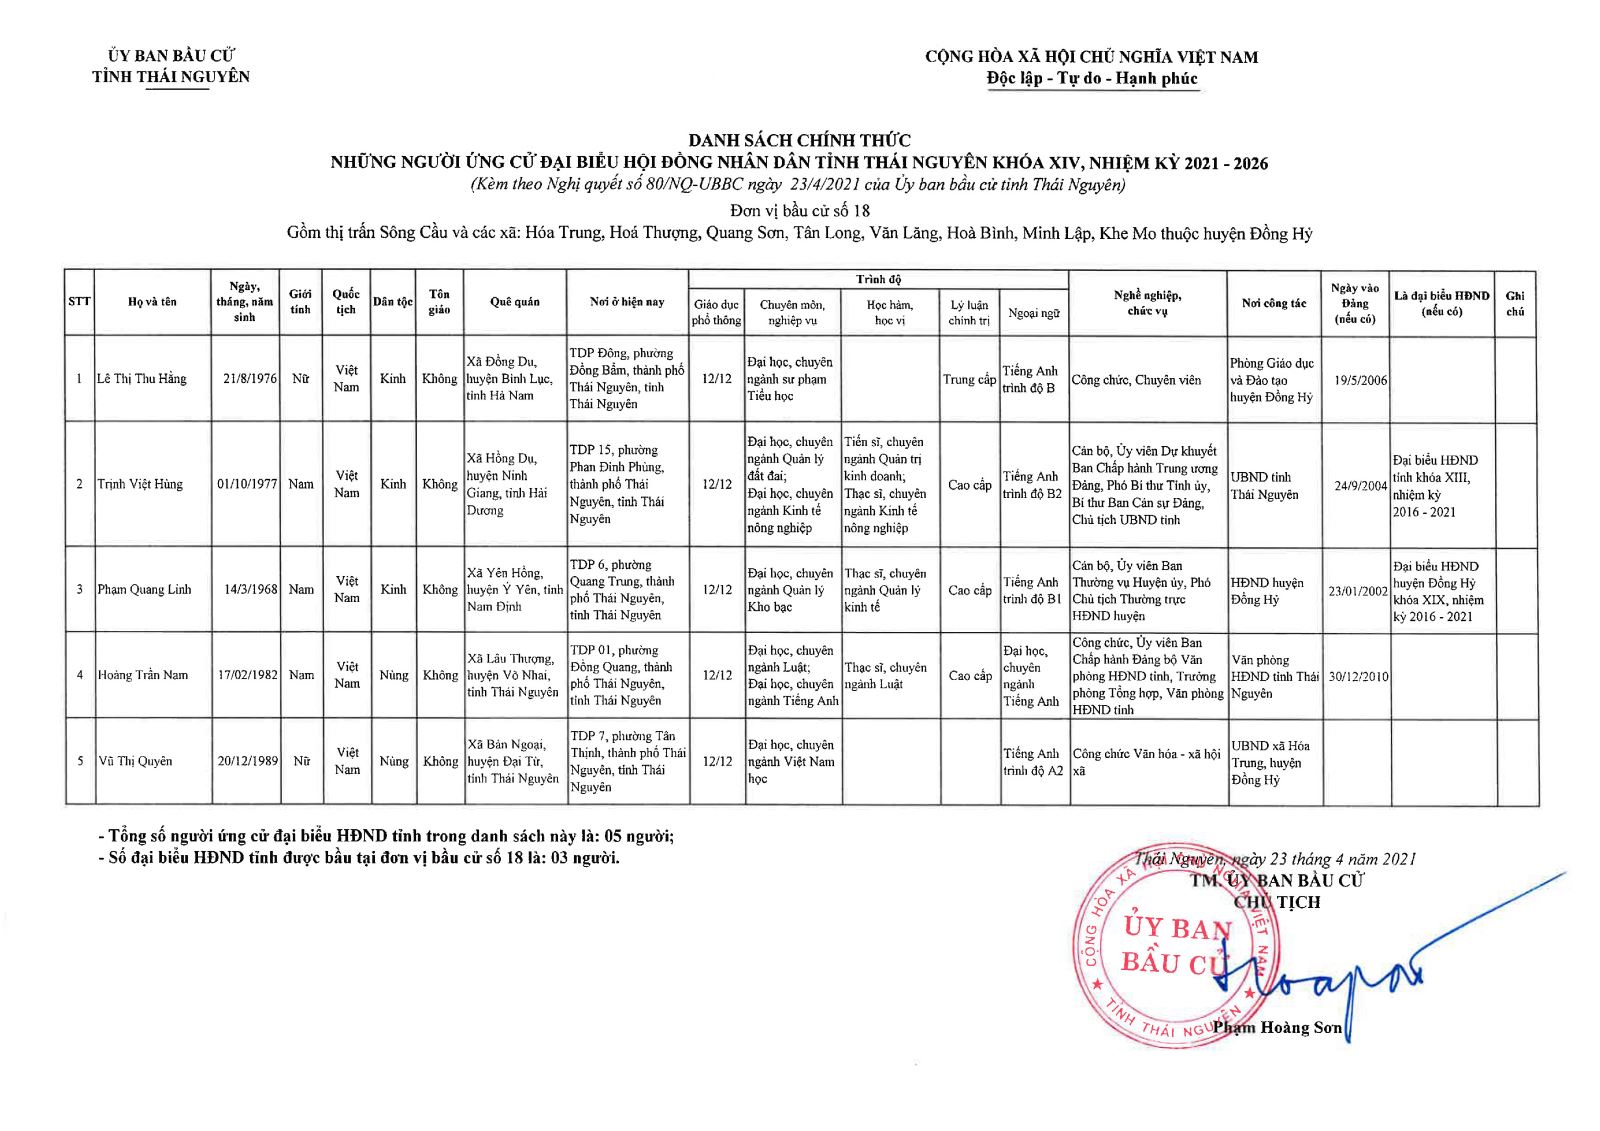 Danh sách chính thức những người ứng cử đại biểu Hội đồng nhân dân tỉnh Thái Nguyên khóa XIV, nhiệm kỳ 2021 - 2026 -3